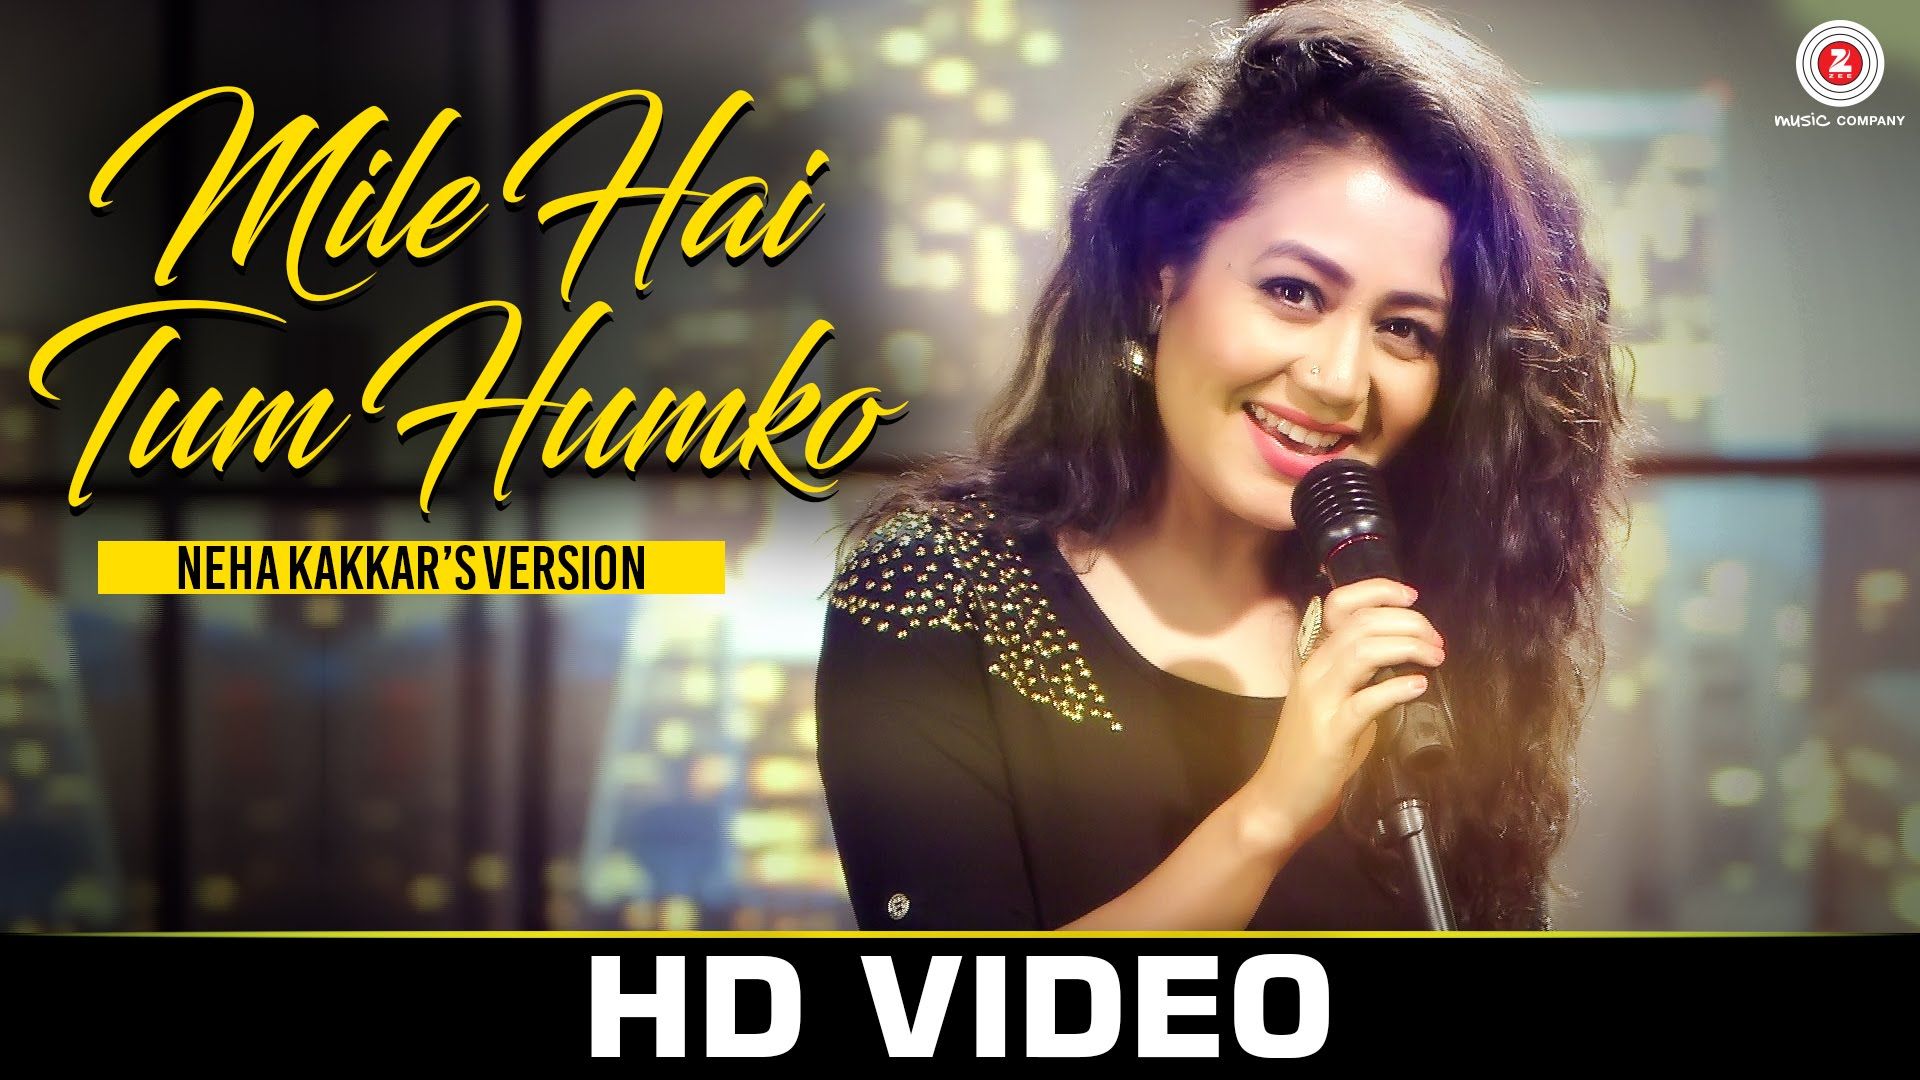 New hindi song video download free